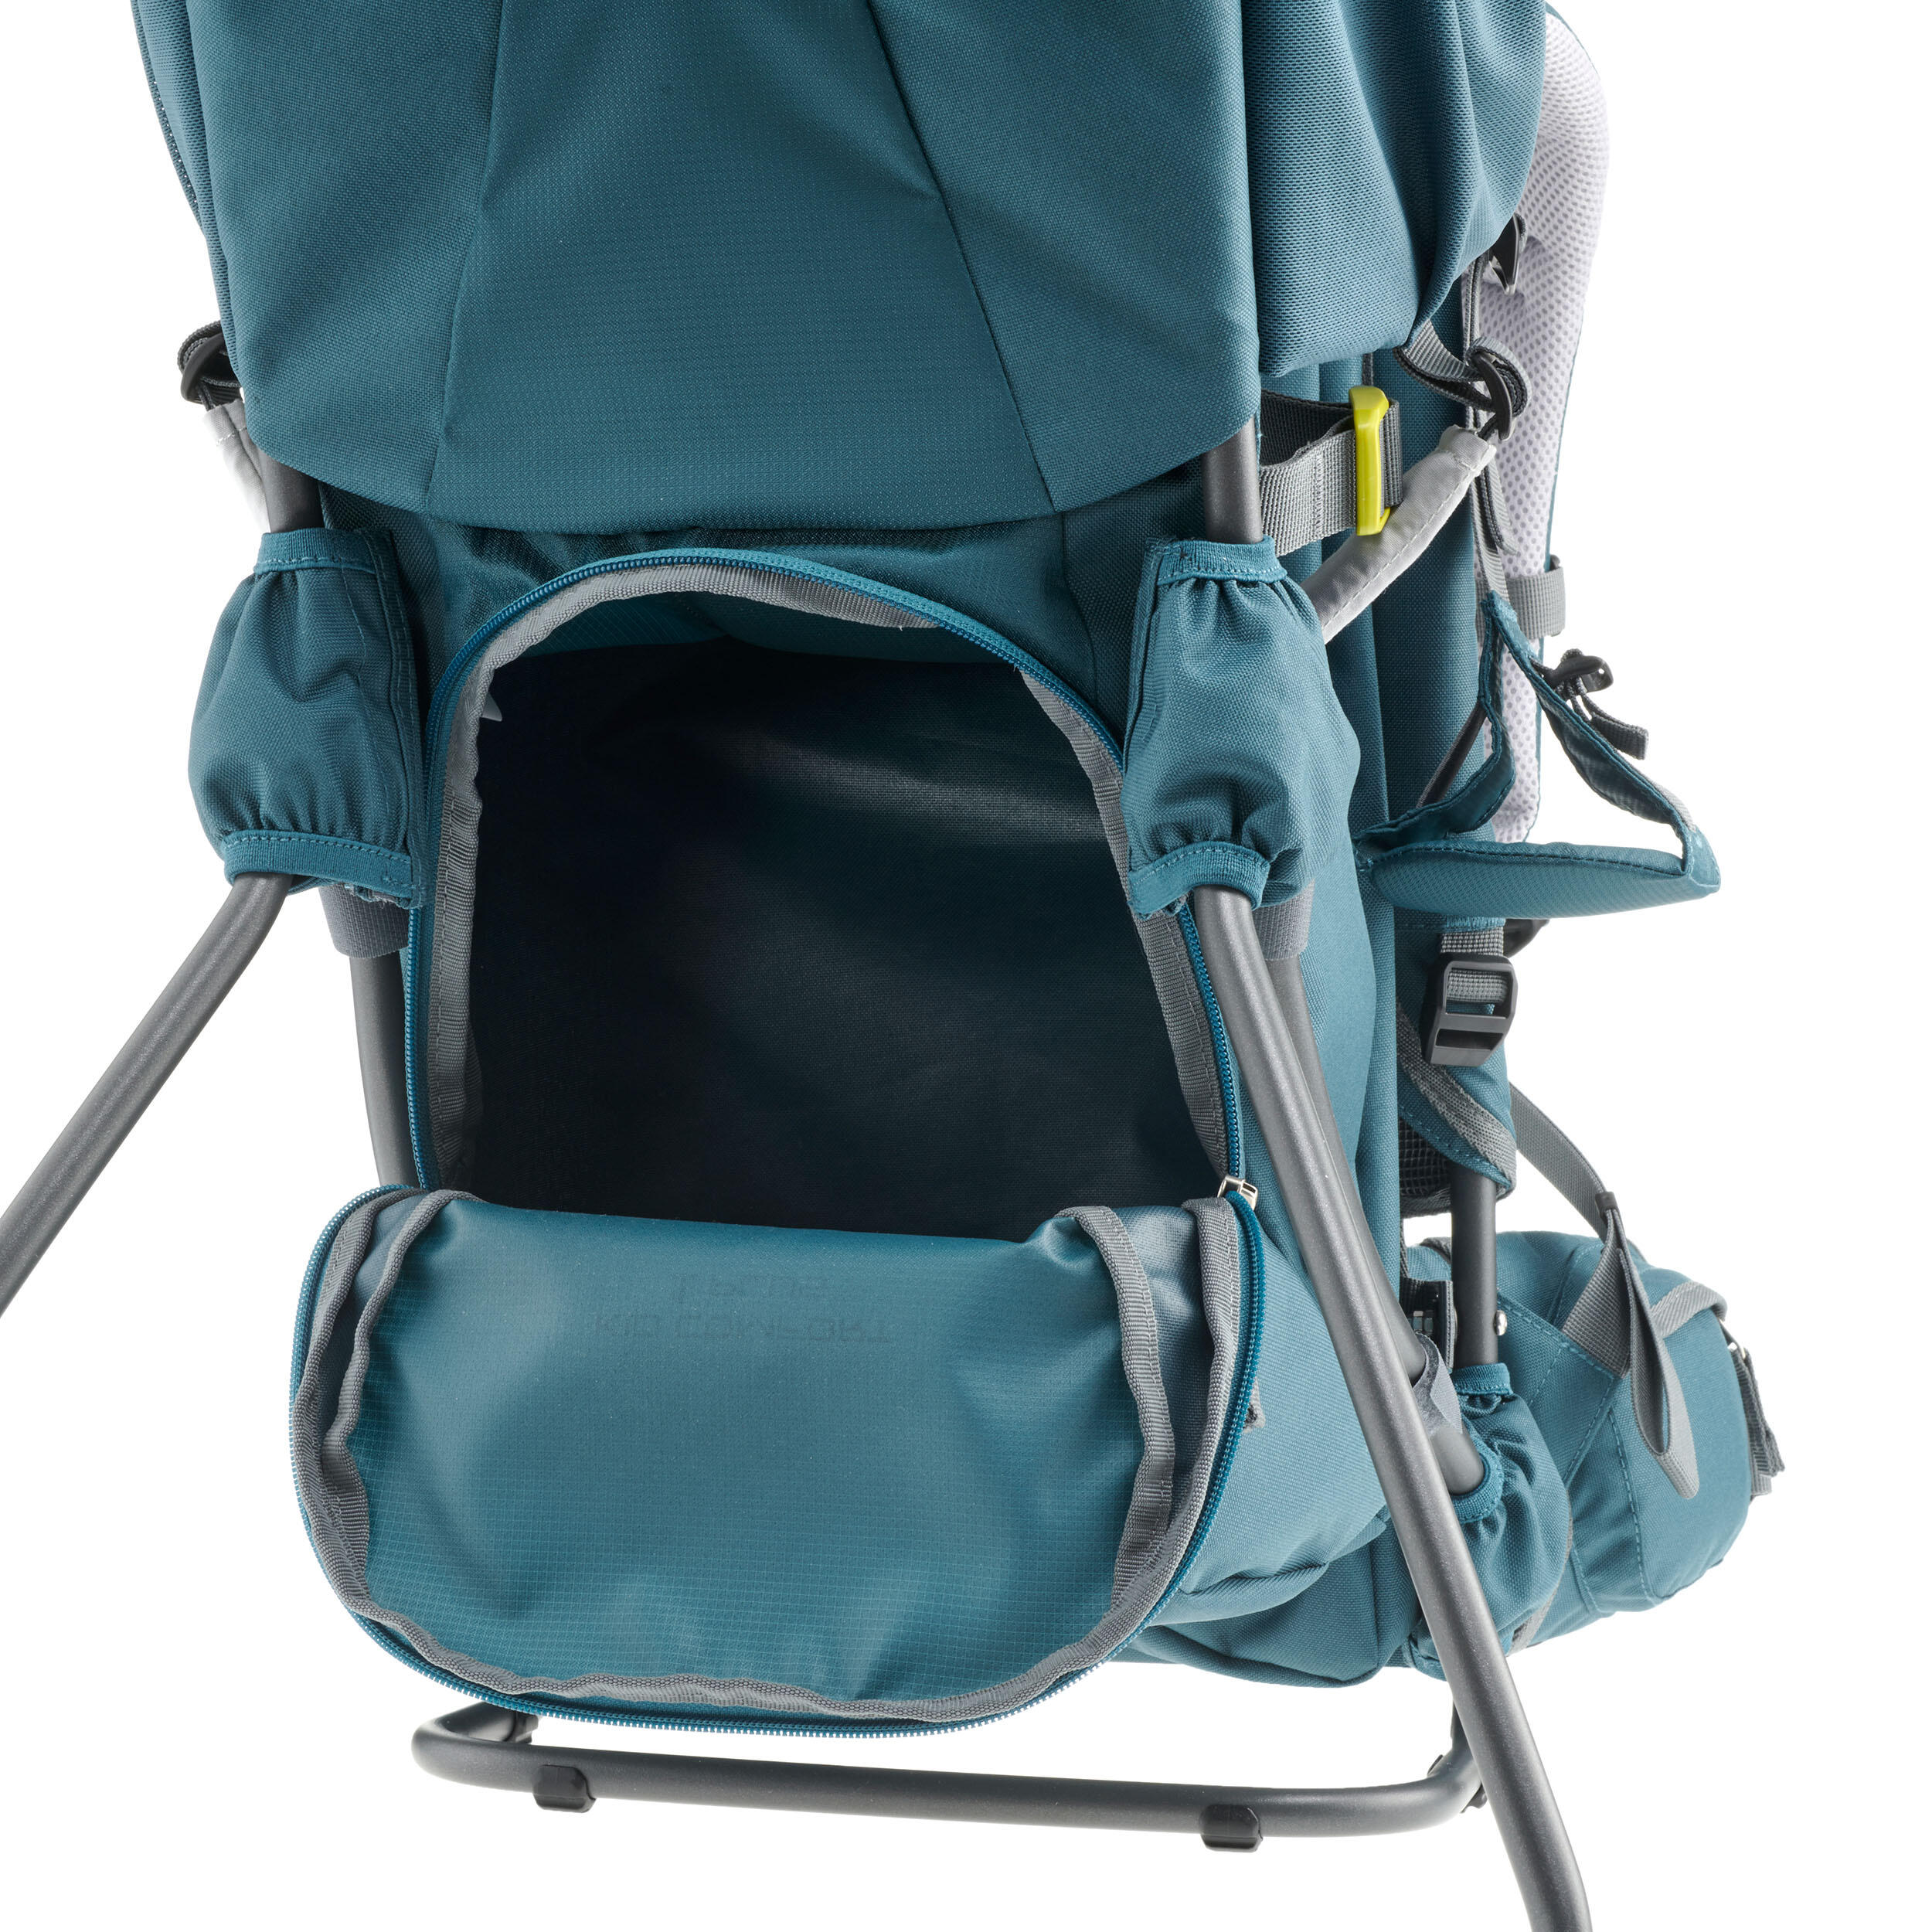 Rigid Baby Carrier - Deuter Kid Comfort 1 Plus 7/7